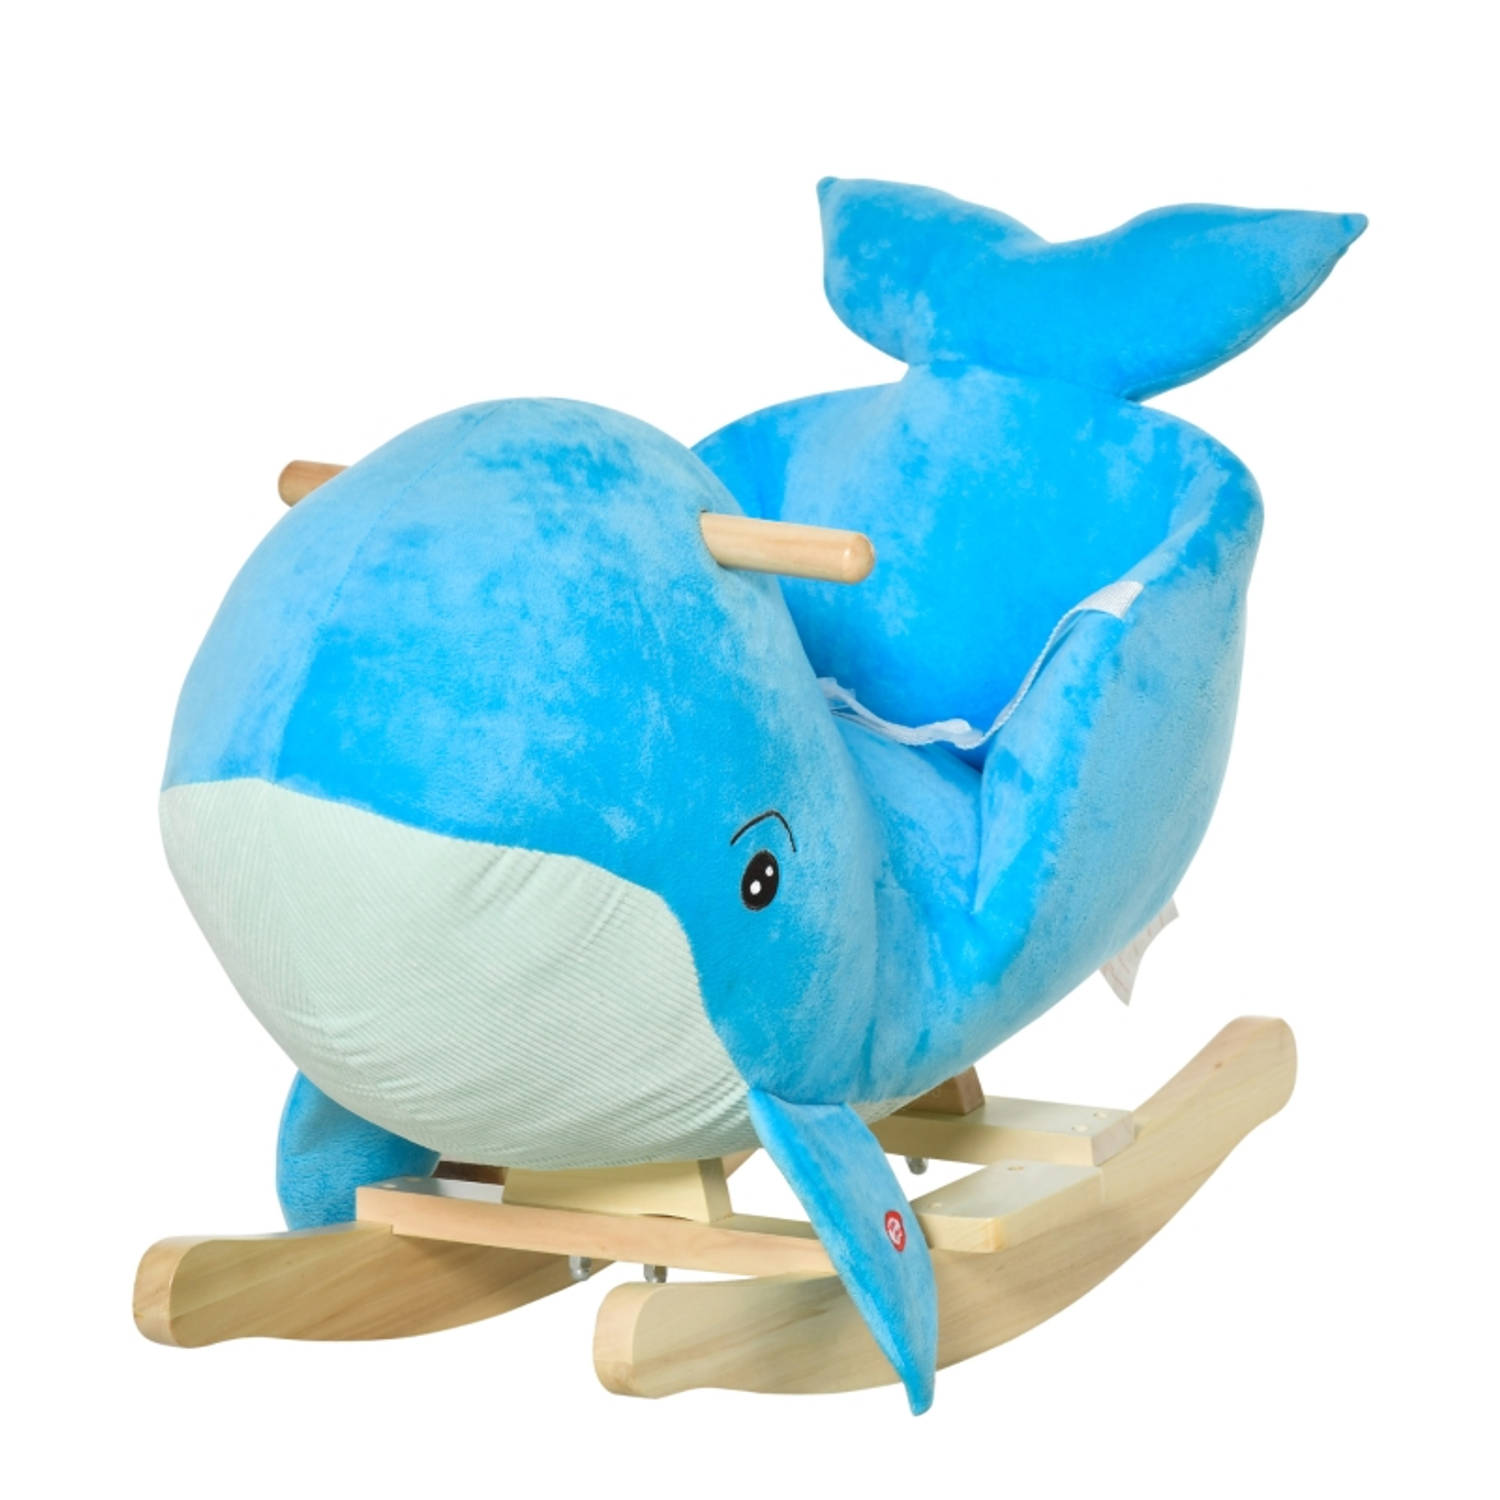 Hobbeldier - Hobbelpaard - Schommelpaard - Schommelstoel voor Kinderen - Speelgoed - Blauw - 60 x 33 x 50 cm